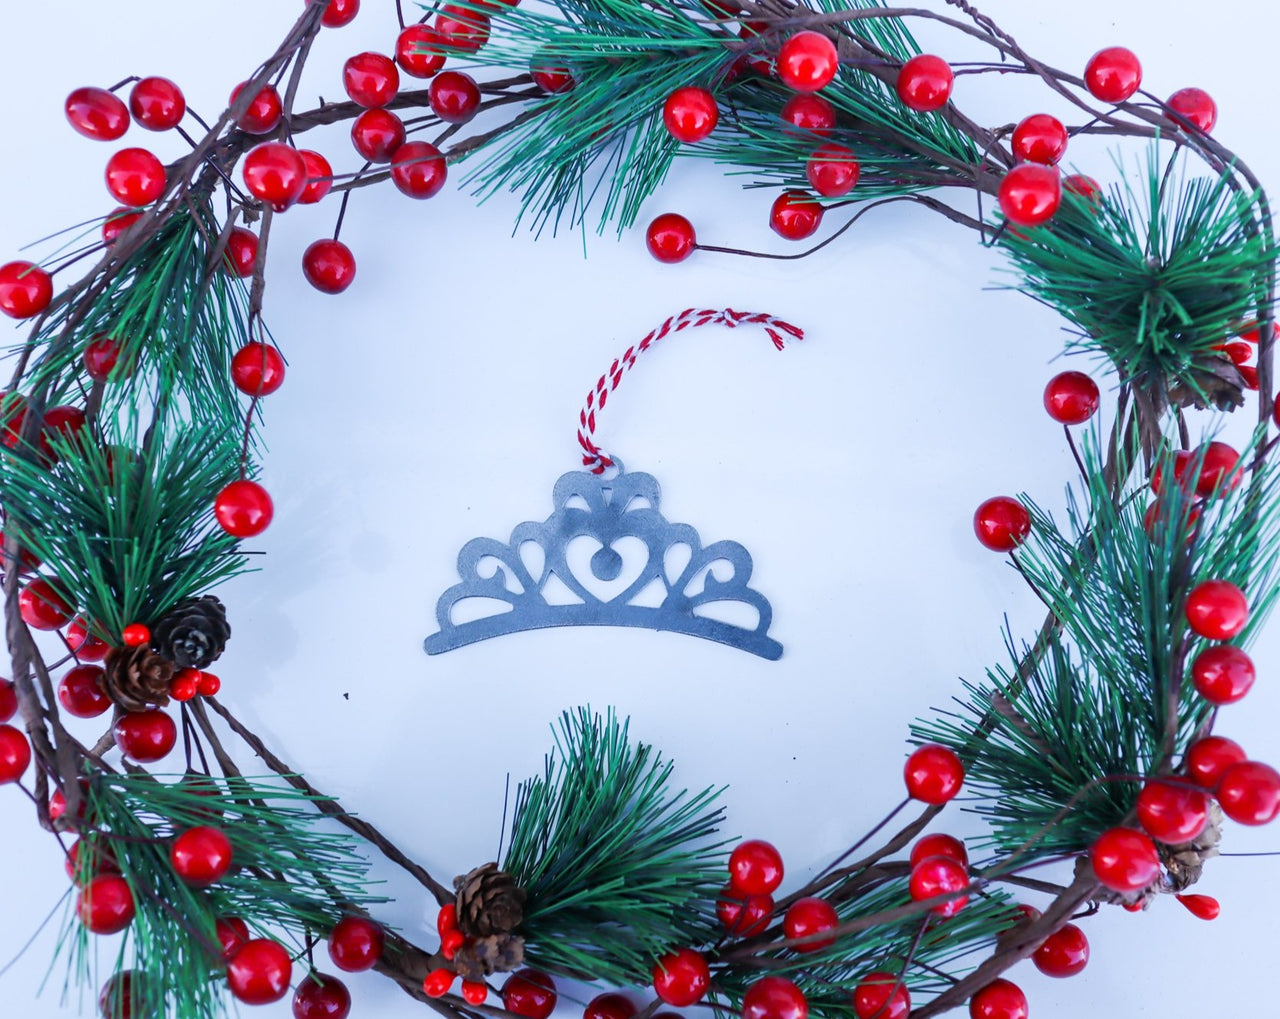 Princess Christmas Ornament - Holiday Stocking Stuffer Gift - Tree Home Decor